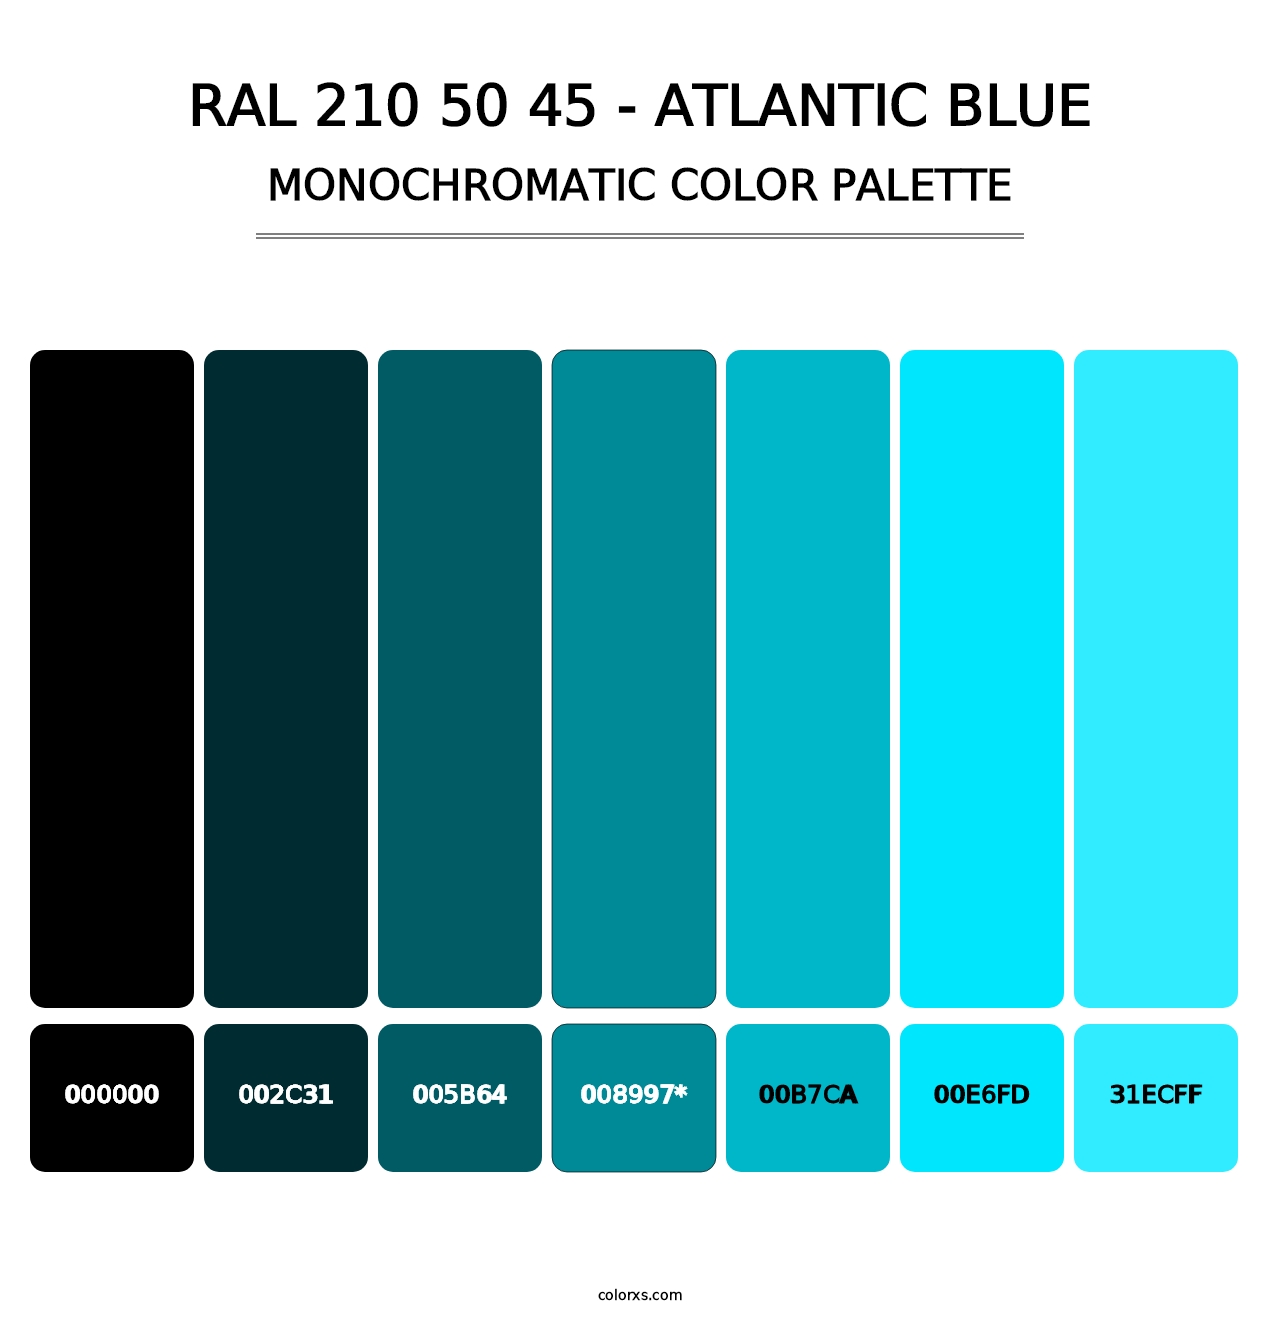 RAL 210 50 45 - Atlantic Blue - Monochromatic Color Palette